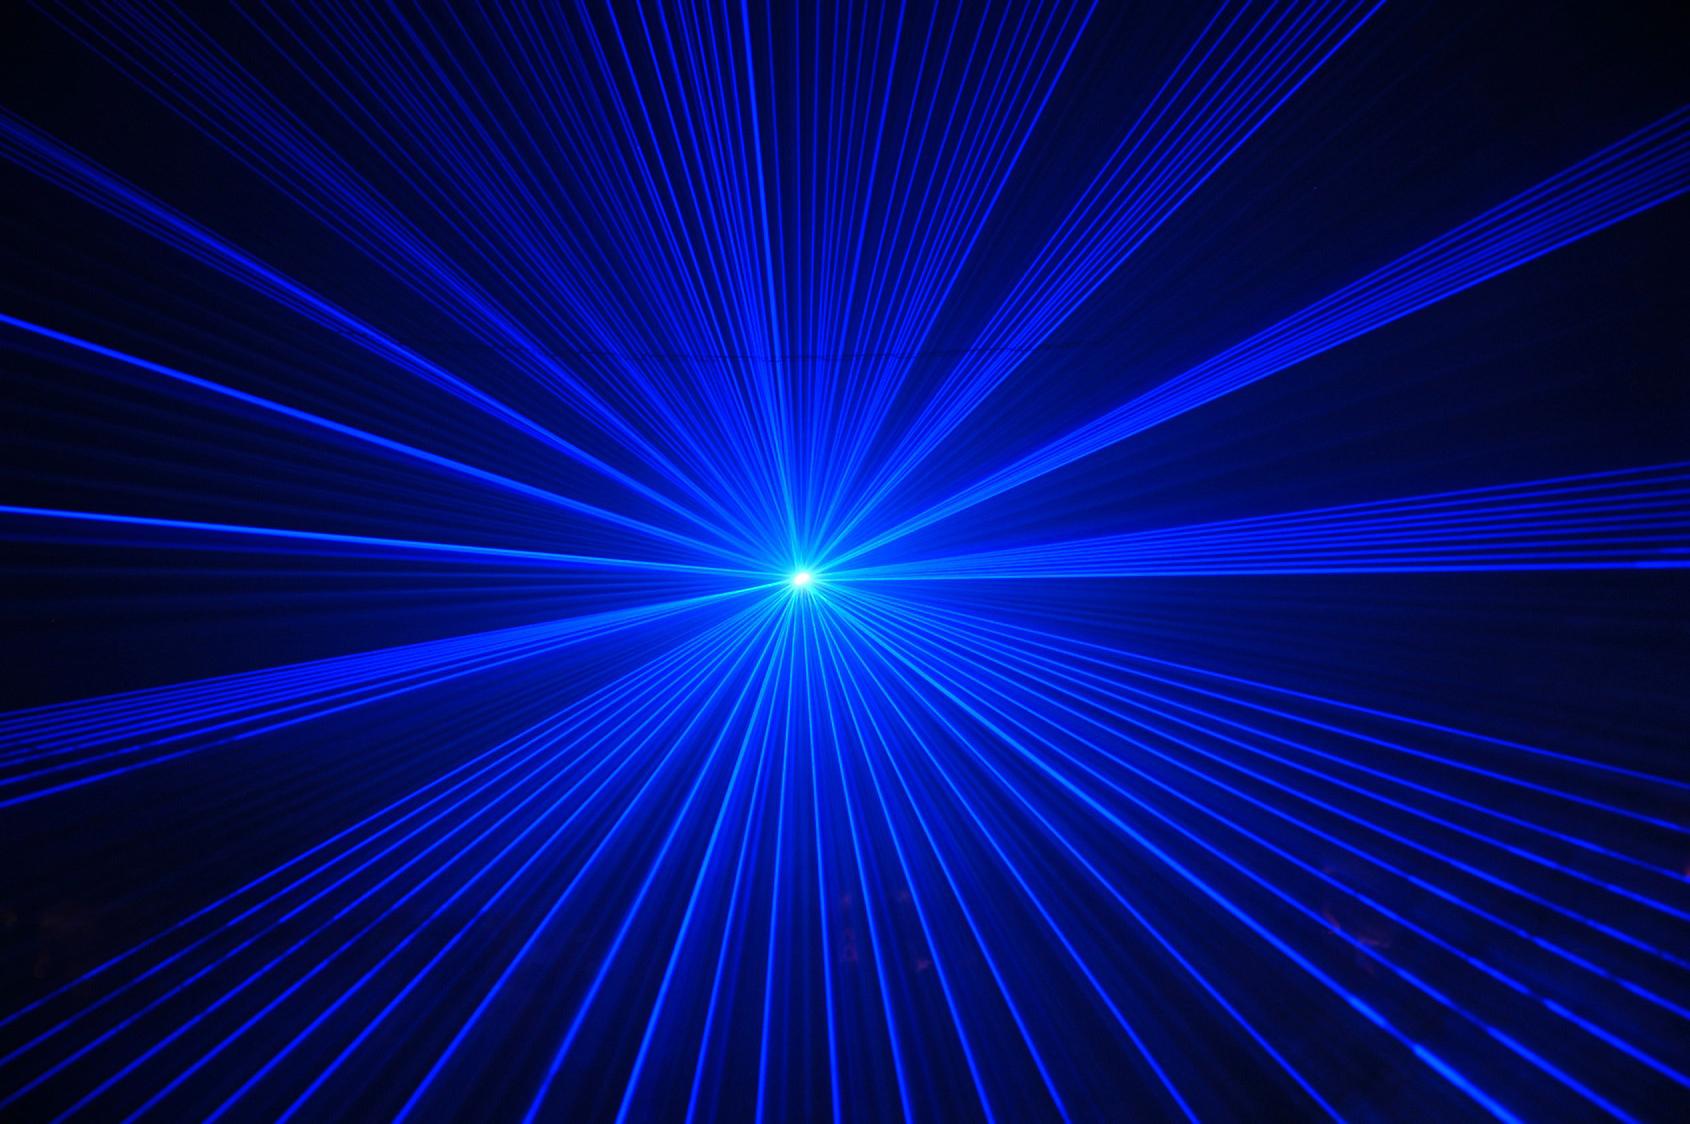 asus zenfone 2 lasertapete,blau,licht,elektrisches blau,laser ,visuelle effektbeleuchtung